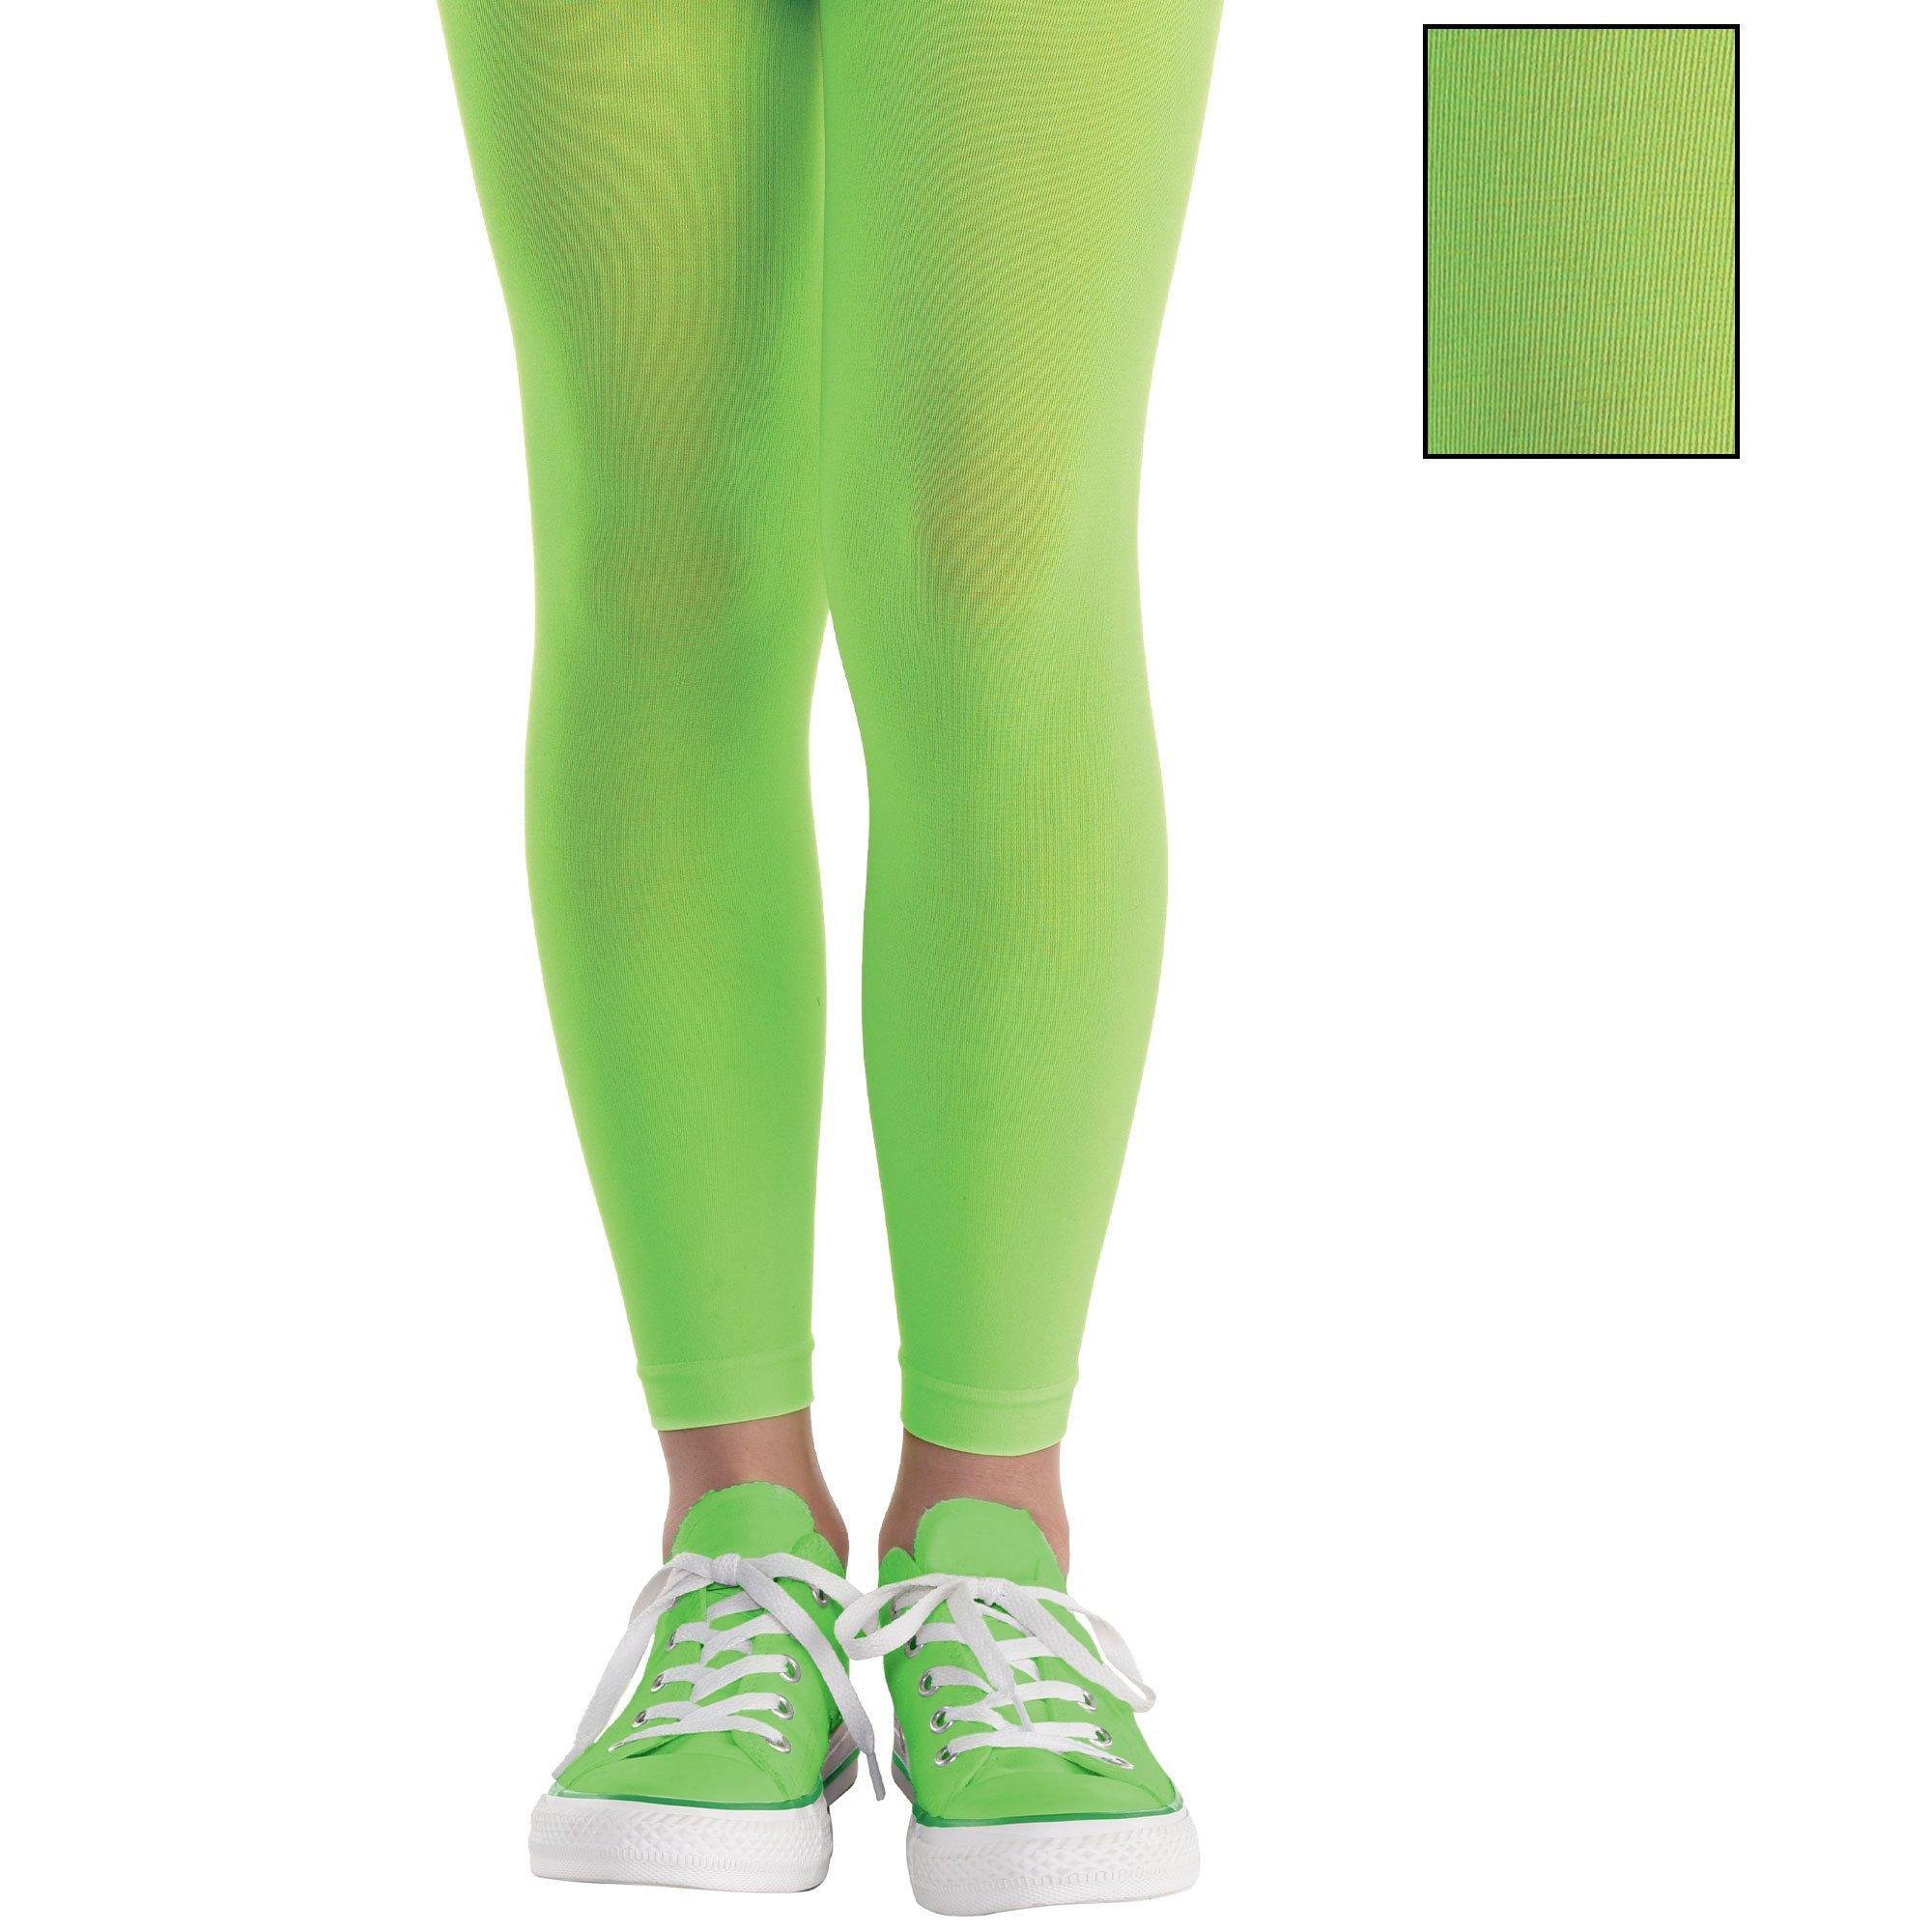 Adult Novelty Leggings Neon Green, $12.99